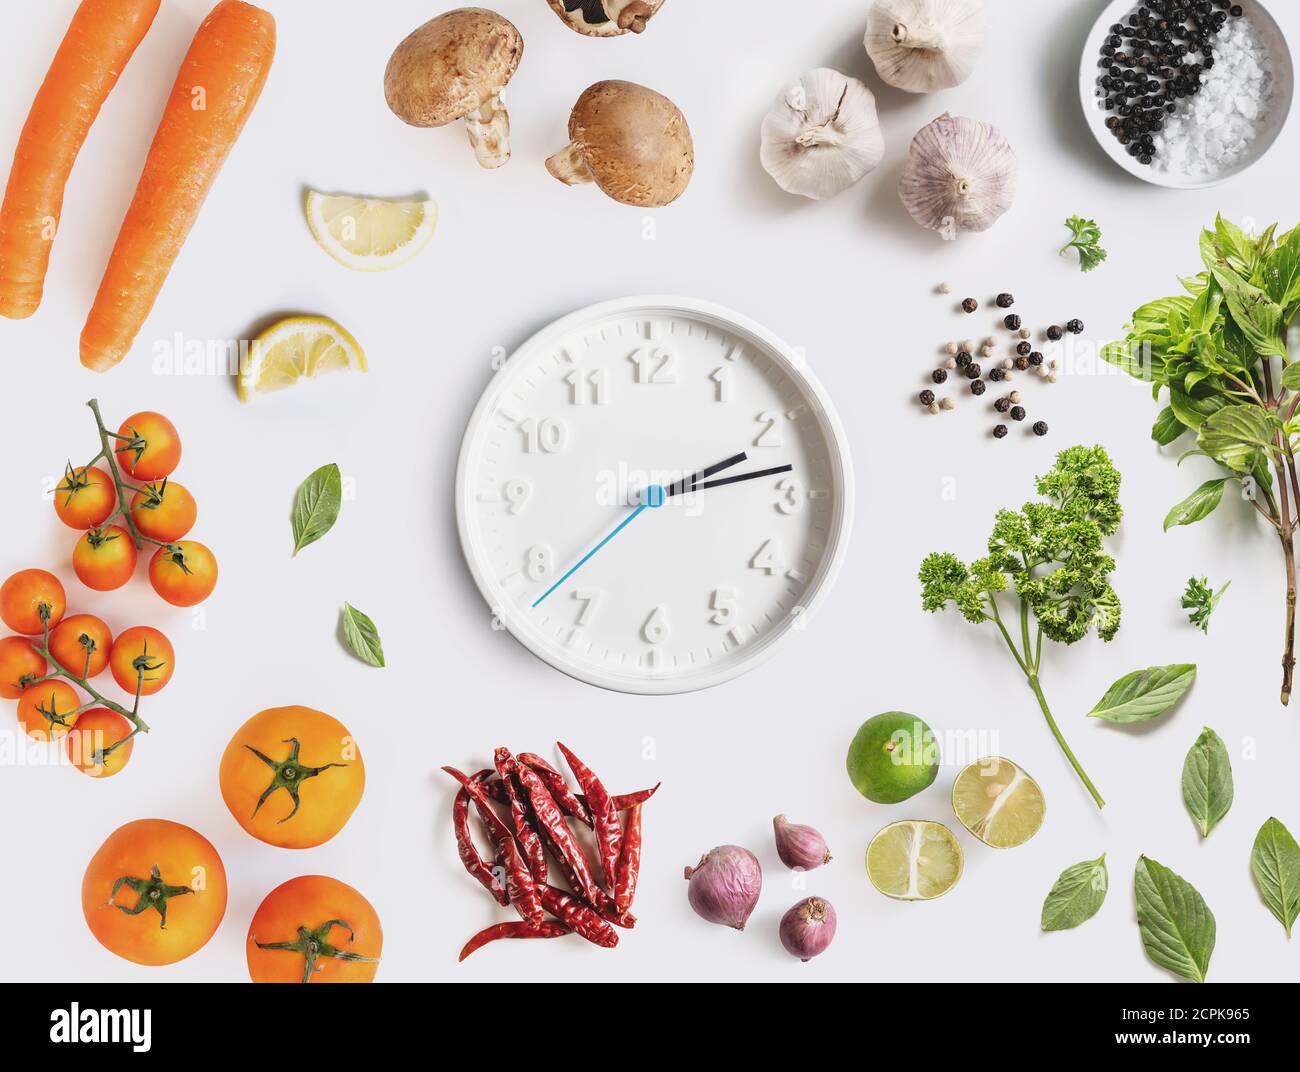 Orologio surround con ingredienti alimentari, verdure e erbe. Concetto di dieta e di alimentazione sana Foto Stock